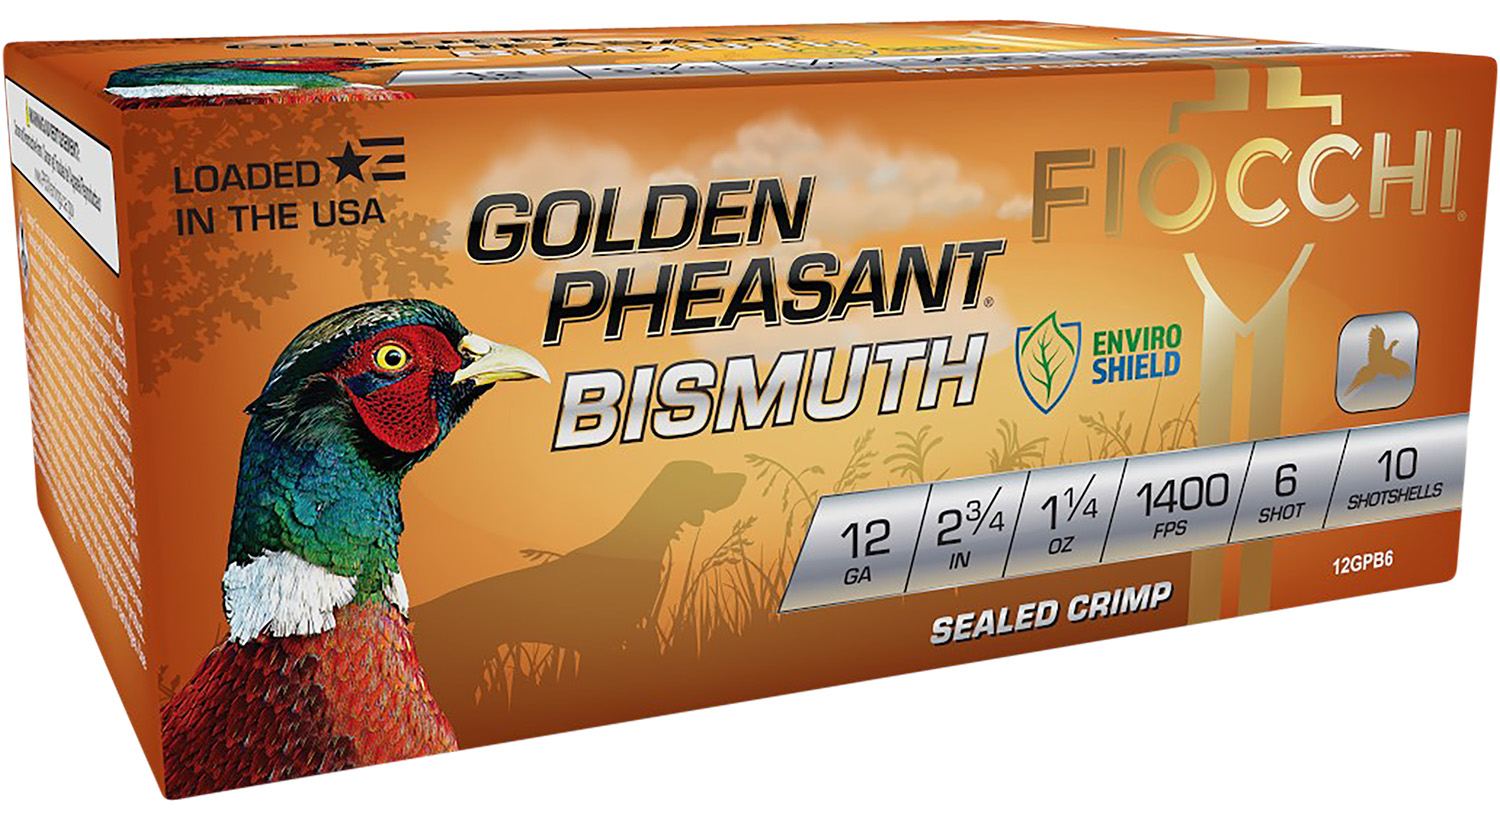 Fiocchi 12GPB6 Golden Pheasant Bismuth 12 Gauge 2.75